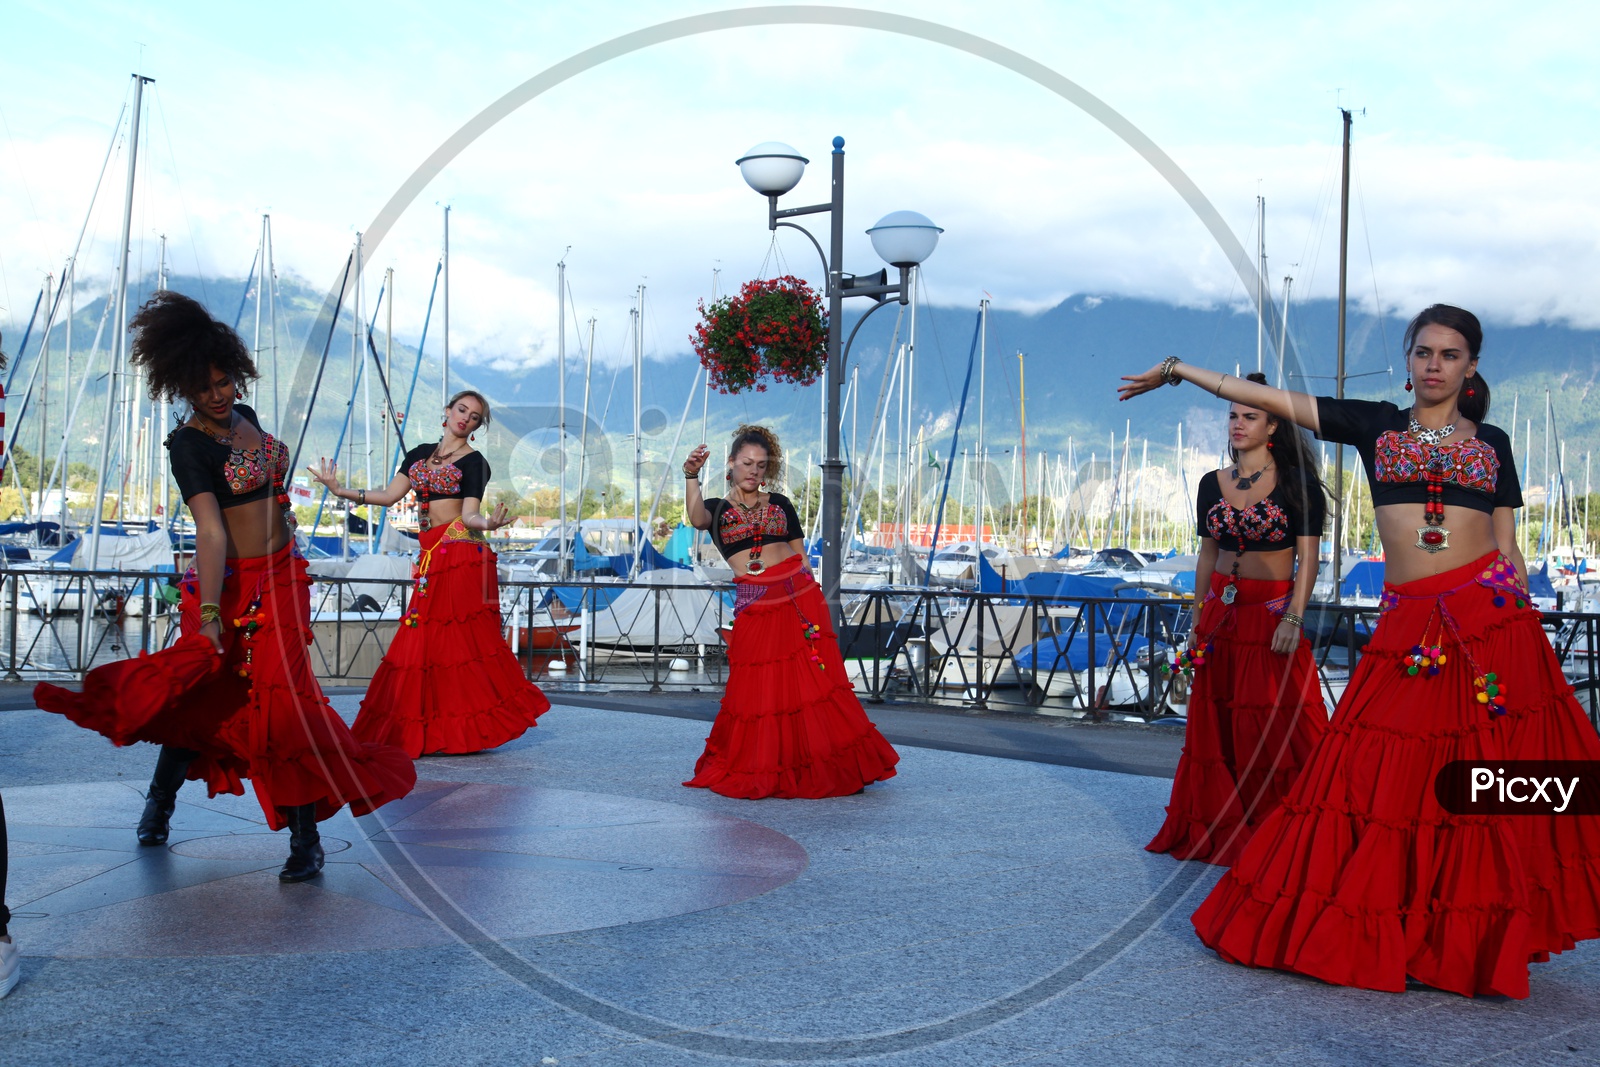 Women dancing at the harbor